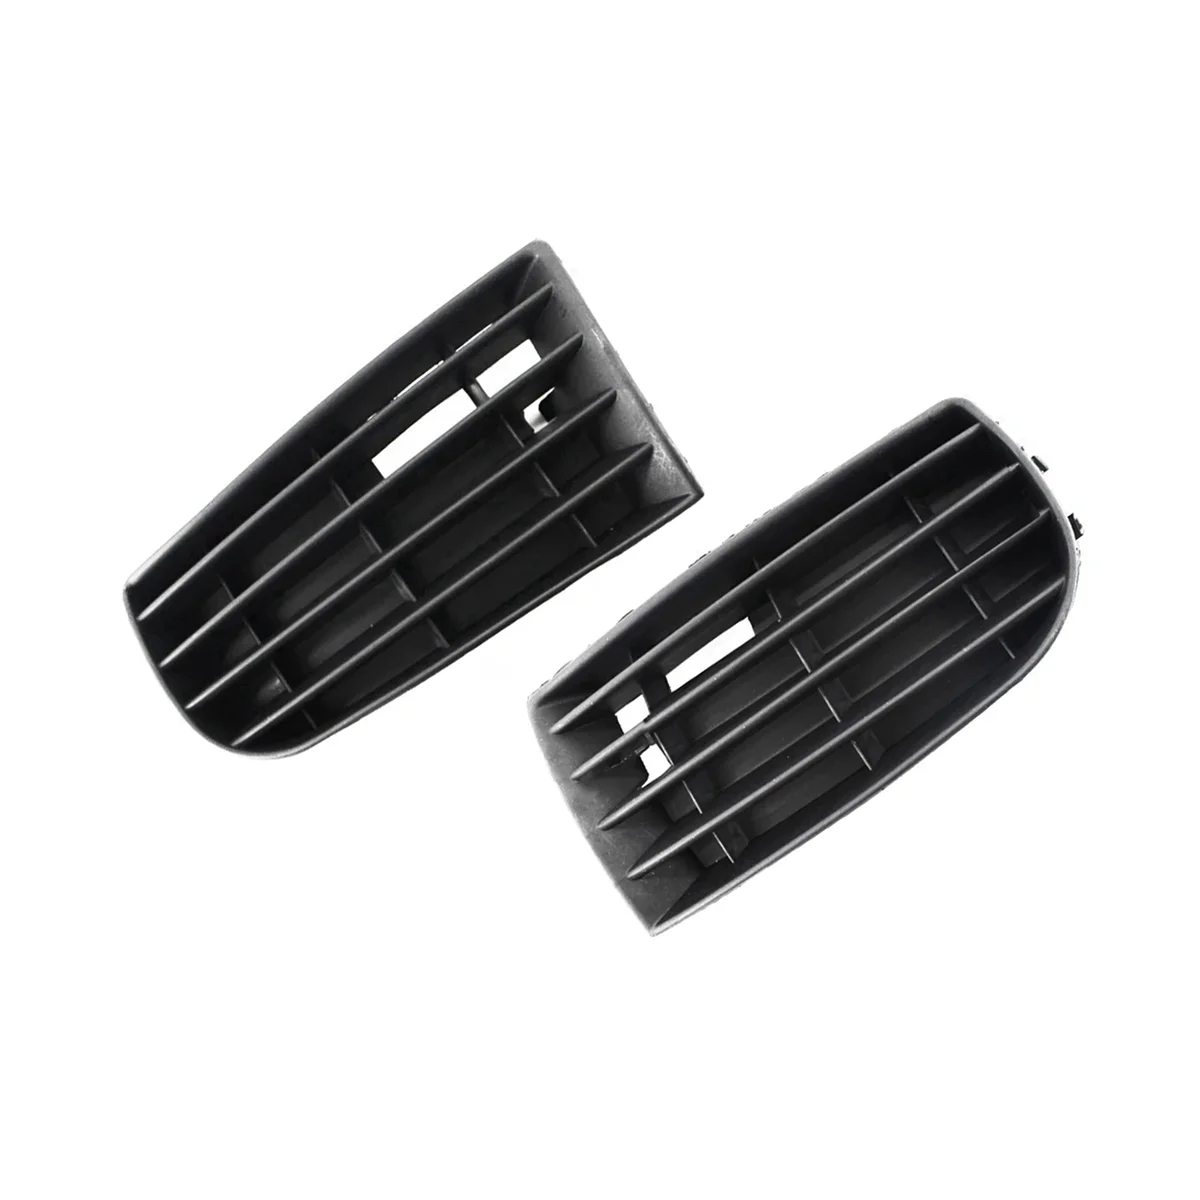 Решетка радиатора рамки противотуманных фар без отверстия Передняя решетка радиатора рамки противотуманных фар Автомобильная для Golf 5 MK5 05-09 1K0853665A 1K0853666A